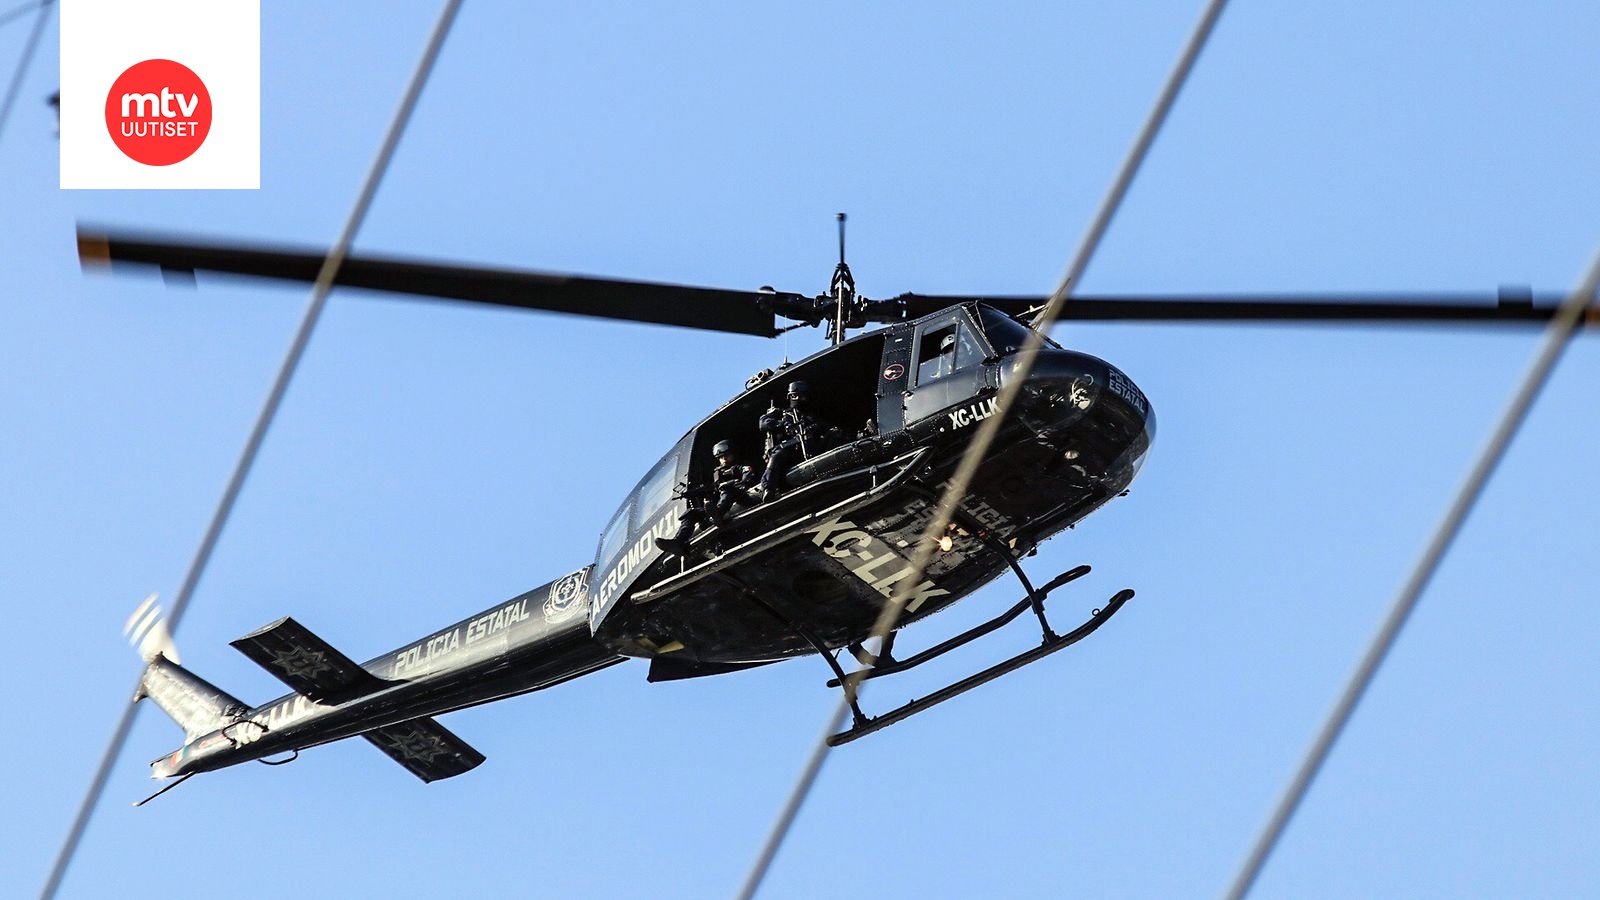 Syyttäjä: Poliisi käytti helikopteria kuvatakseen nudisteja ja pariskunnan  lemmen leikkejä 